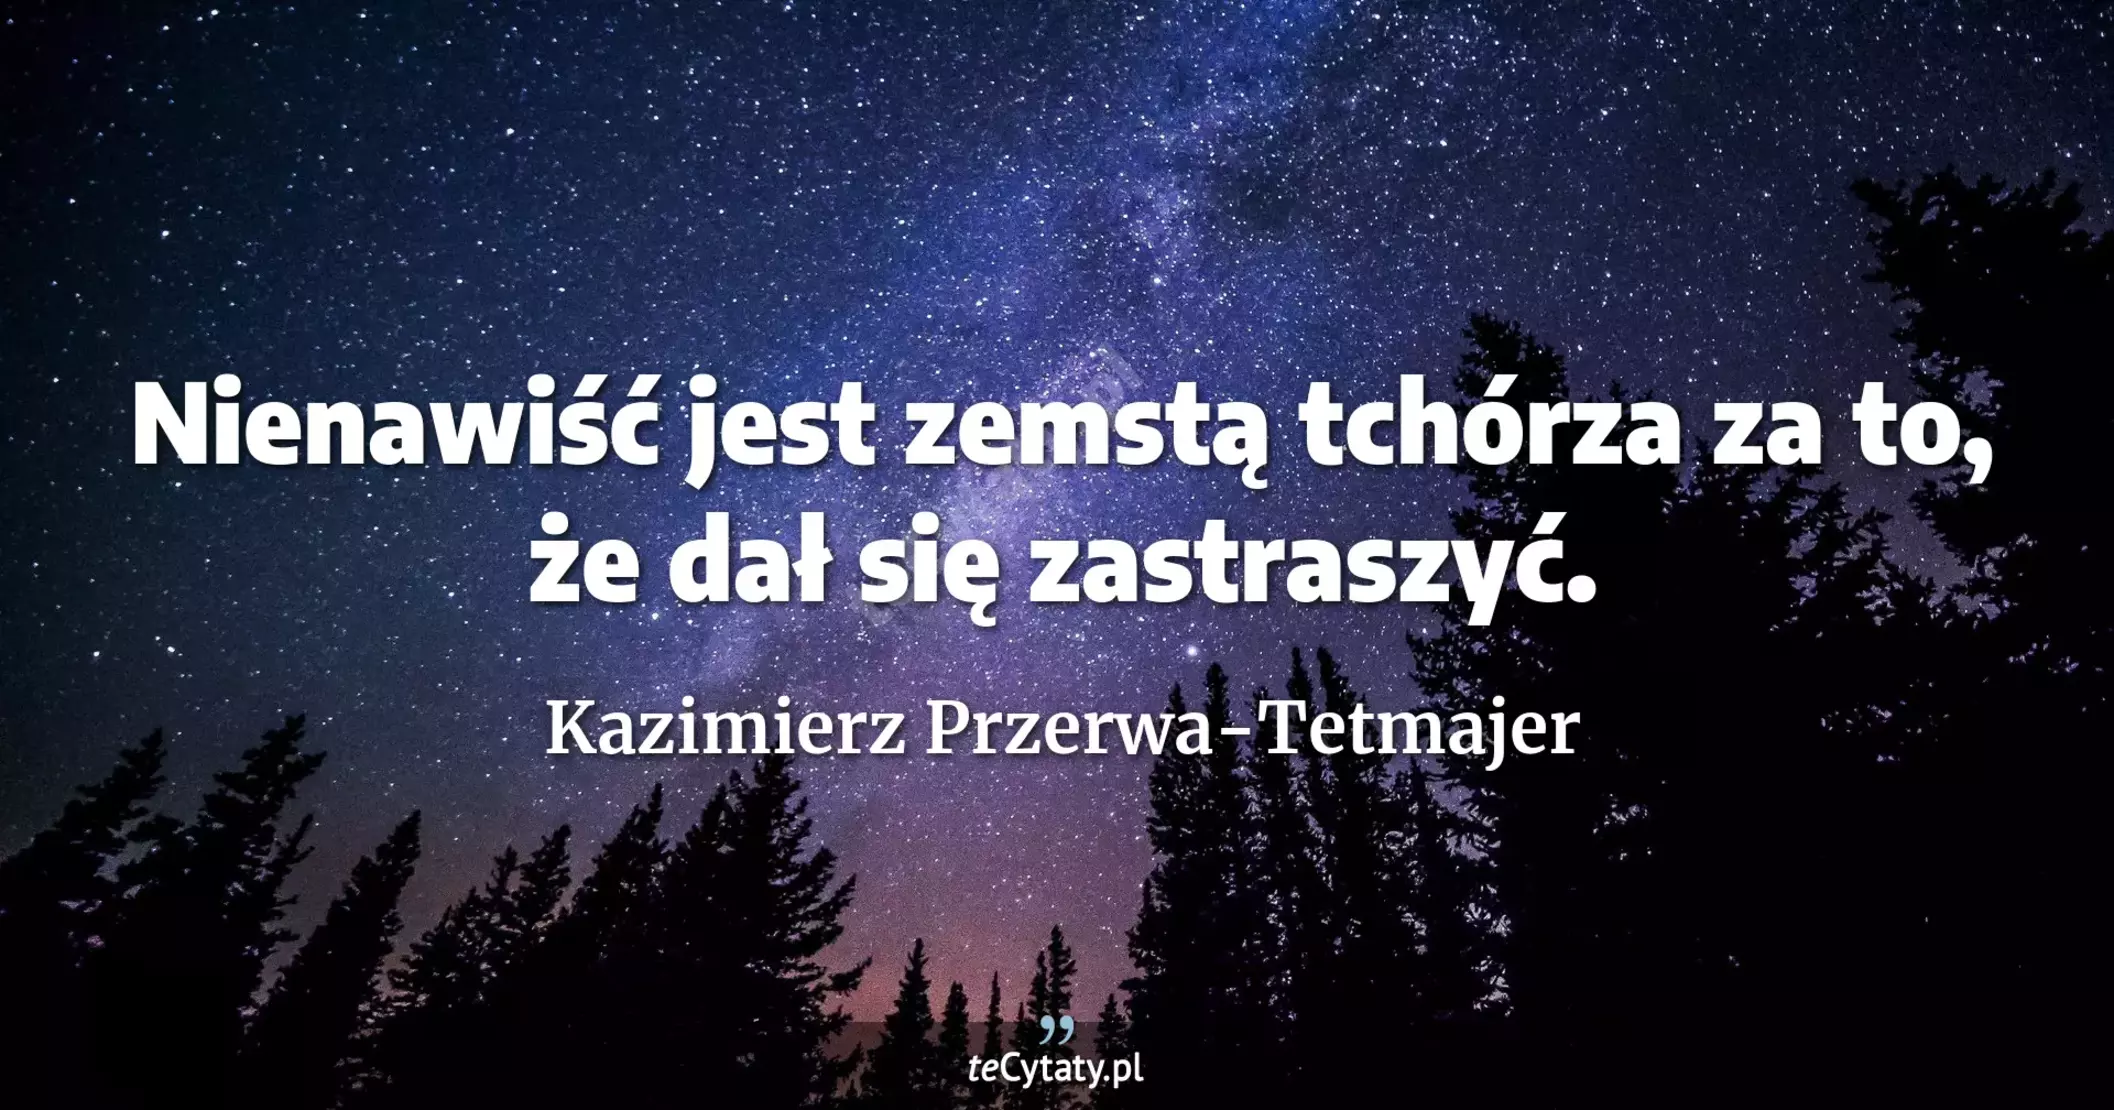 Nienawiść jest zemstą tchórza za to, że dał się zastraszyć. - Kazimierz Przerwa-Tetmajer